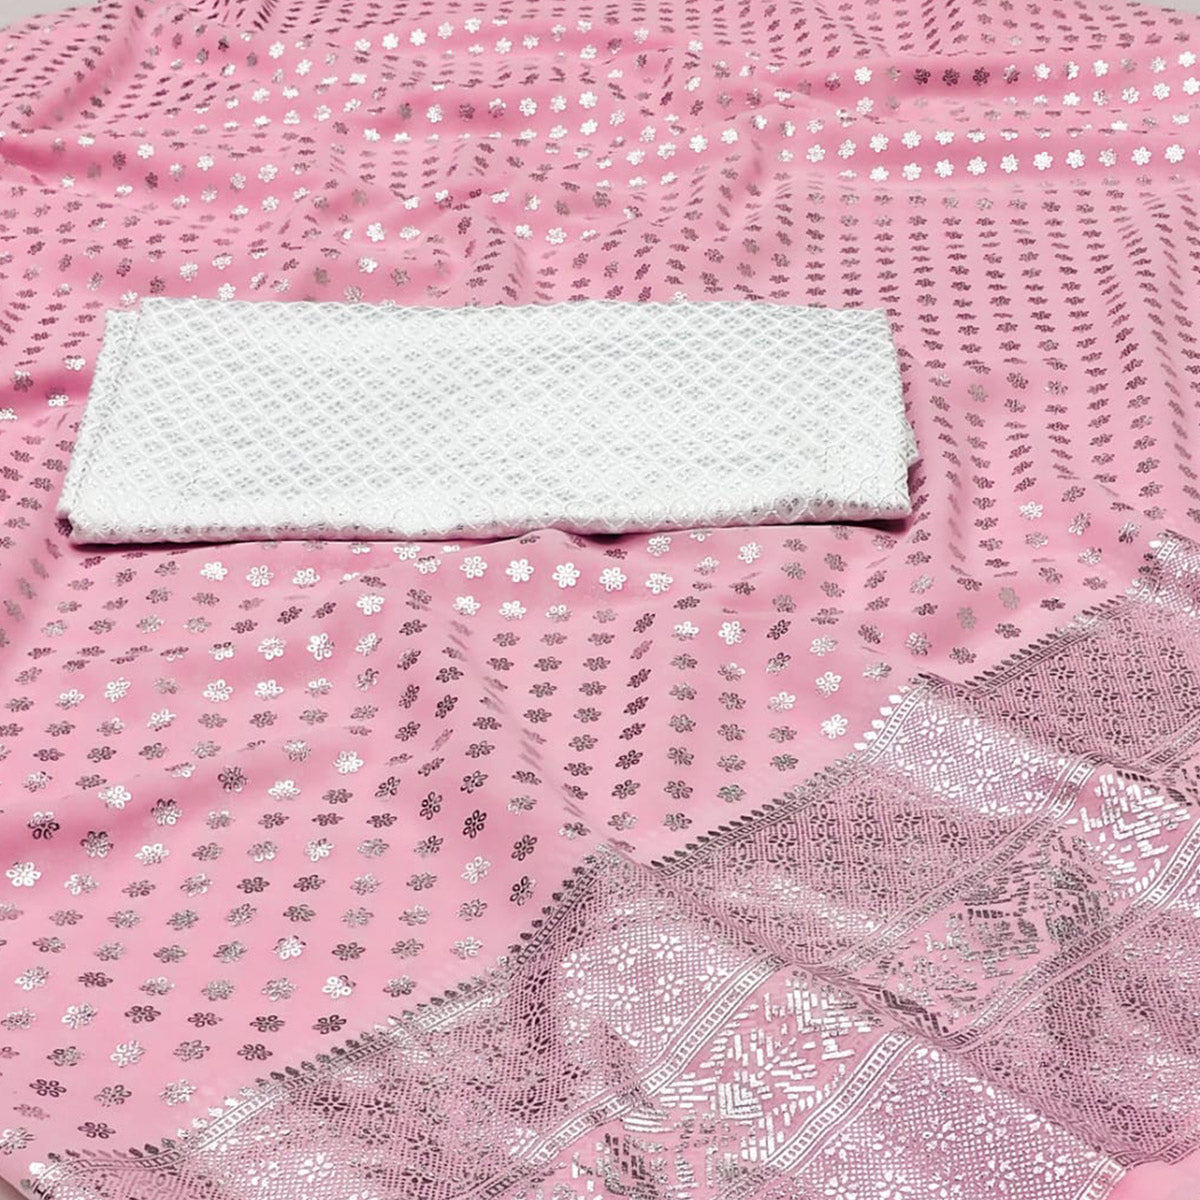 Pink Foil Printed Georgette Saree